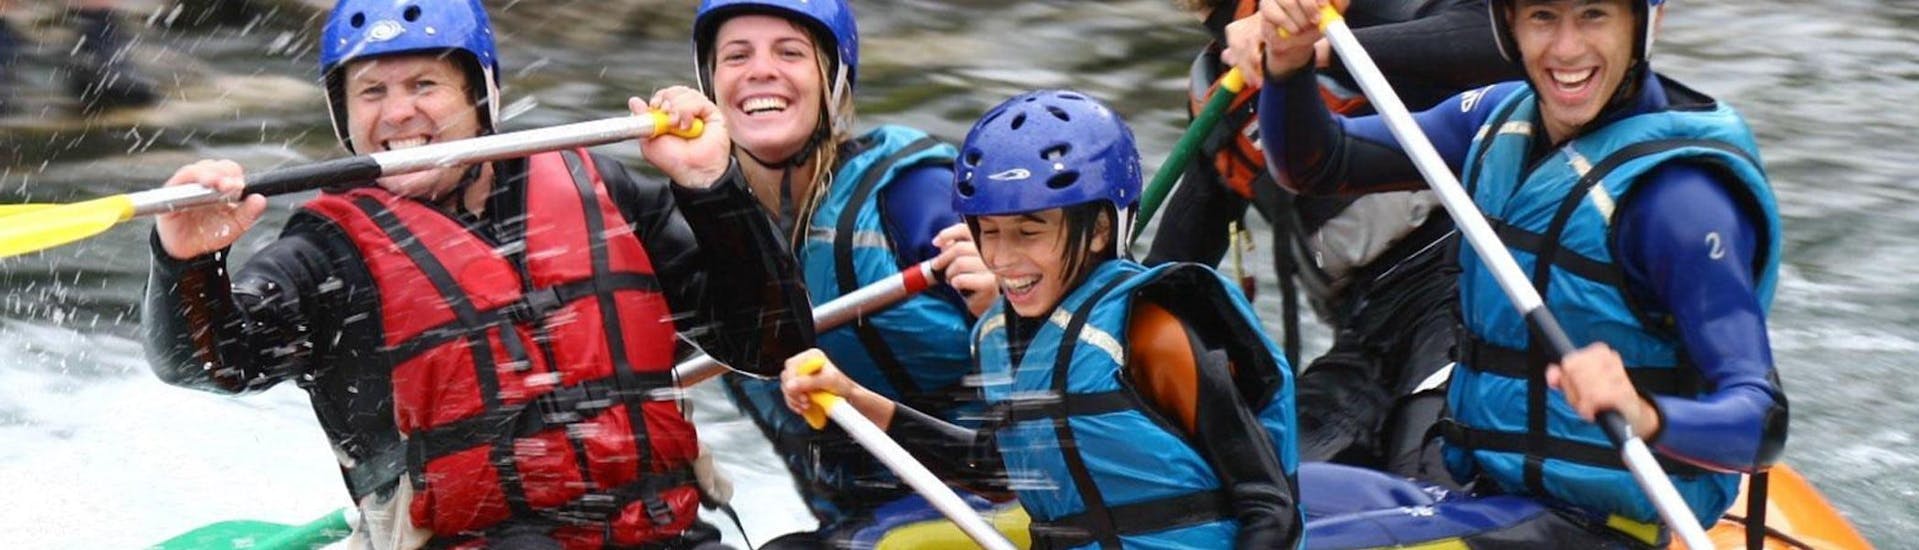 Une famille s'amuse pendant leur activité de Rafting sur le Gave de Pau - Mini-Boat avec Ohlala Eaux Vives.